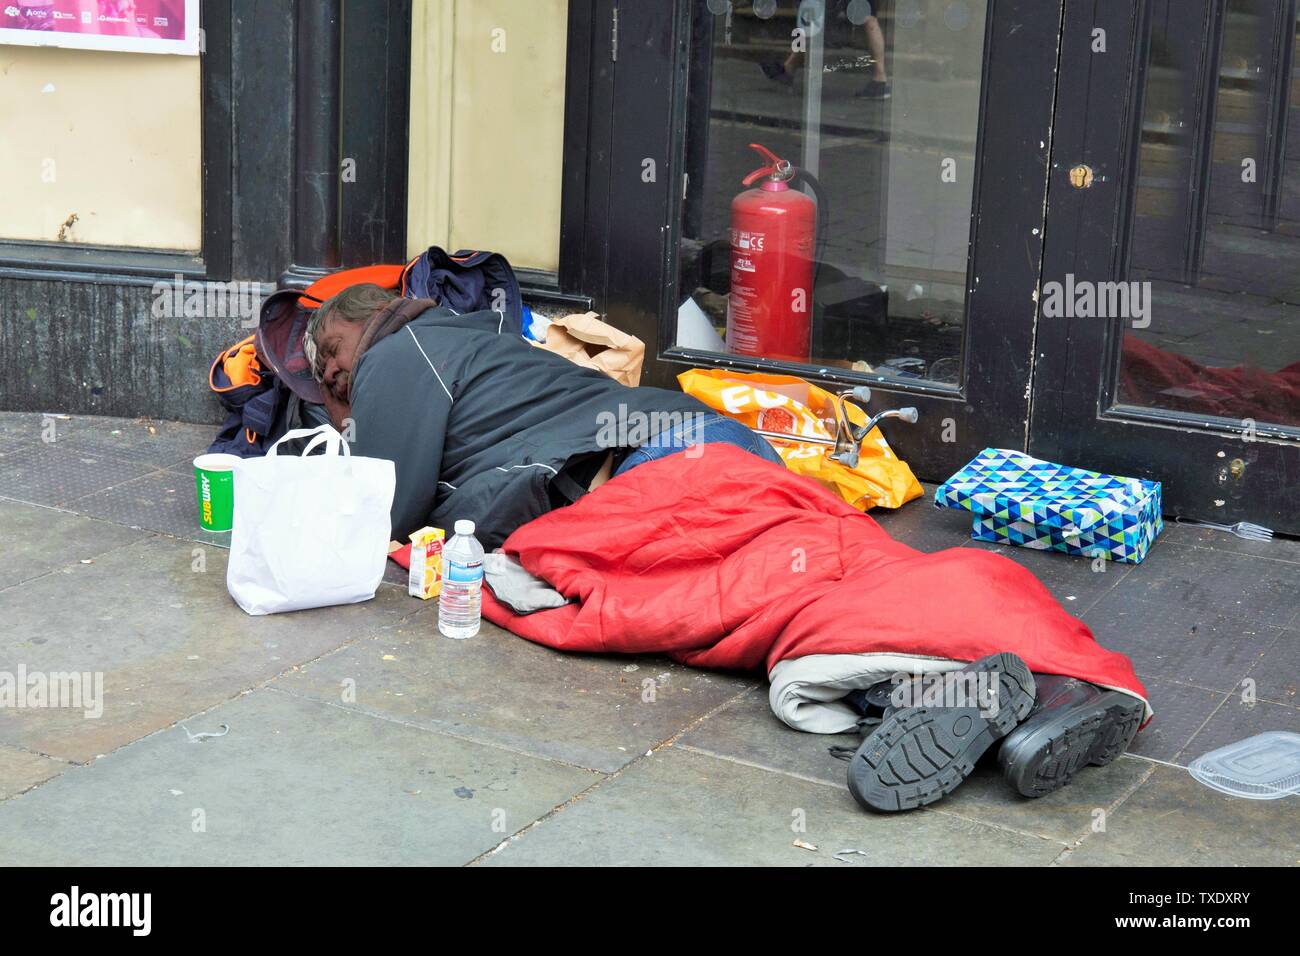 Menschen schlafen auf Pflaster, Liverpool, England, UK, Vereinigtes Königreich Stockfoto